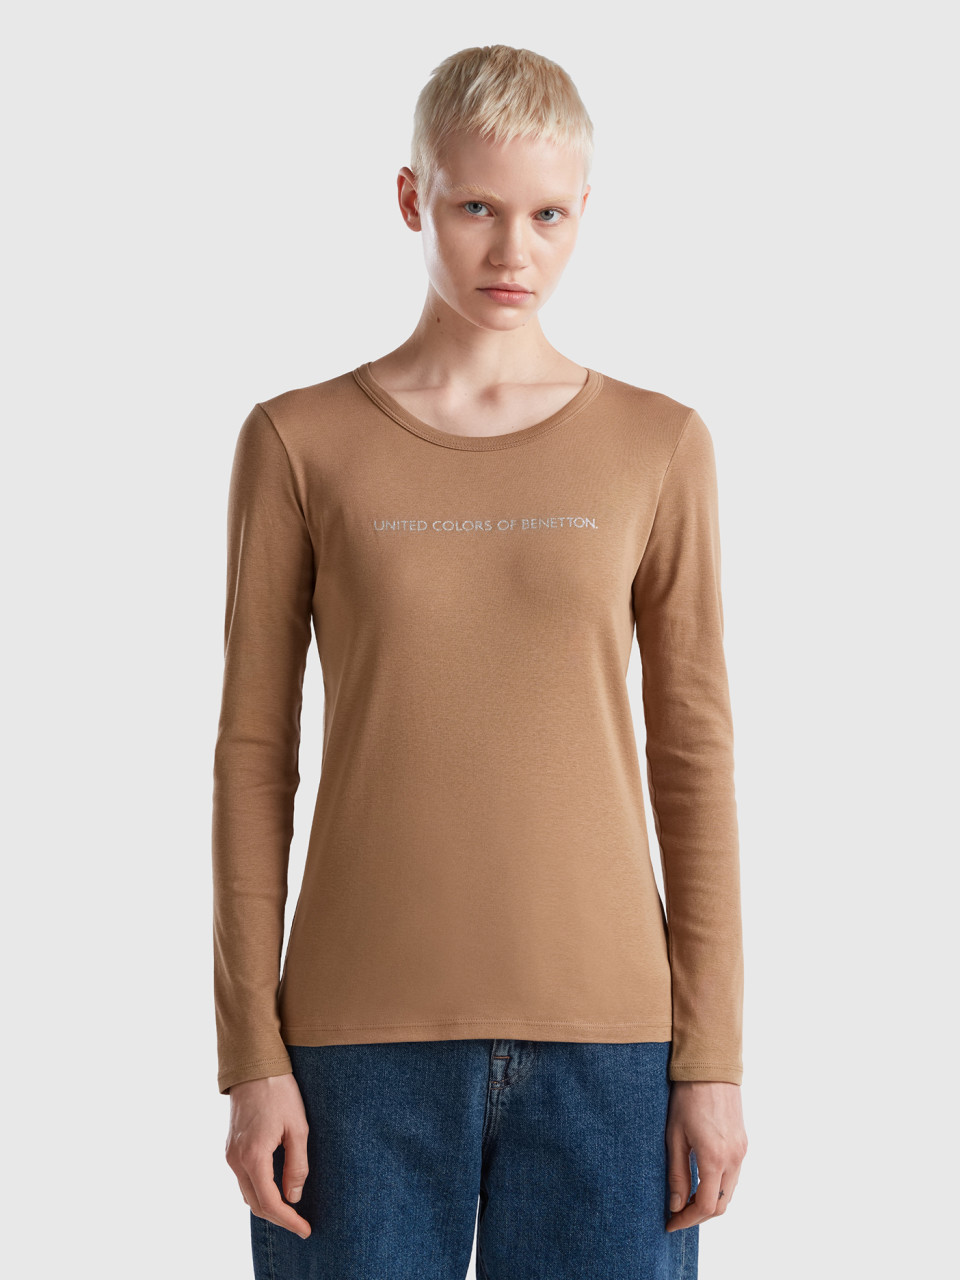 Benetton, Long Sleeve Camel T-shirt, Camel, Women